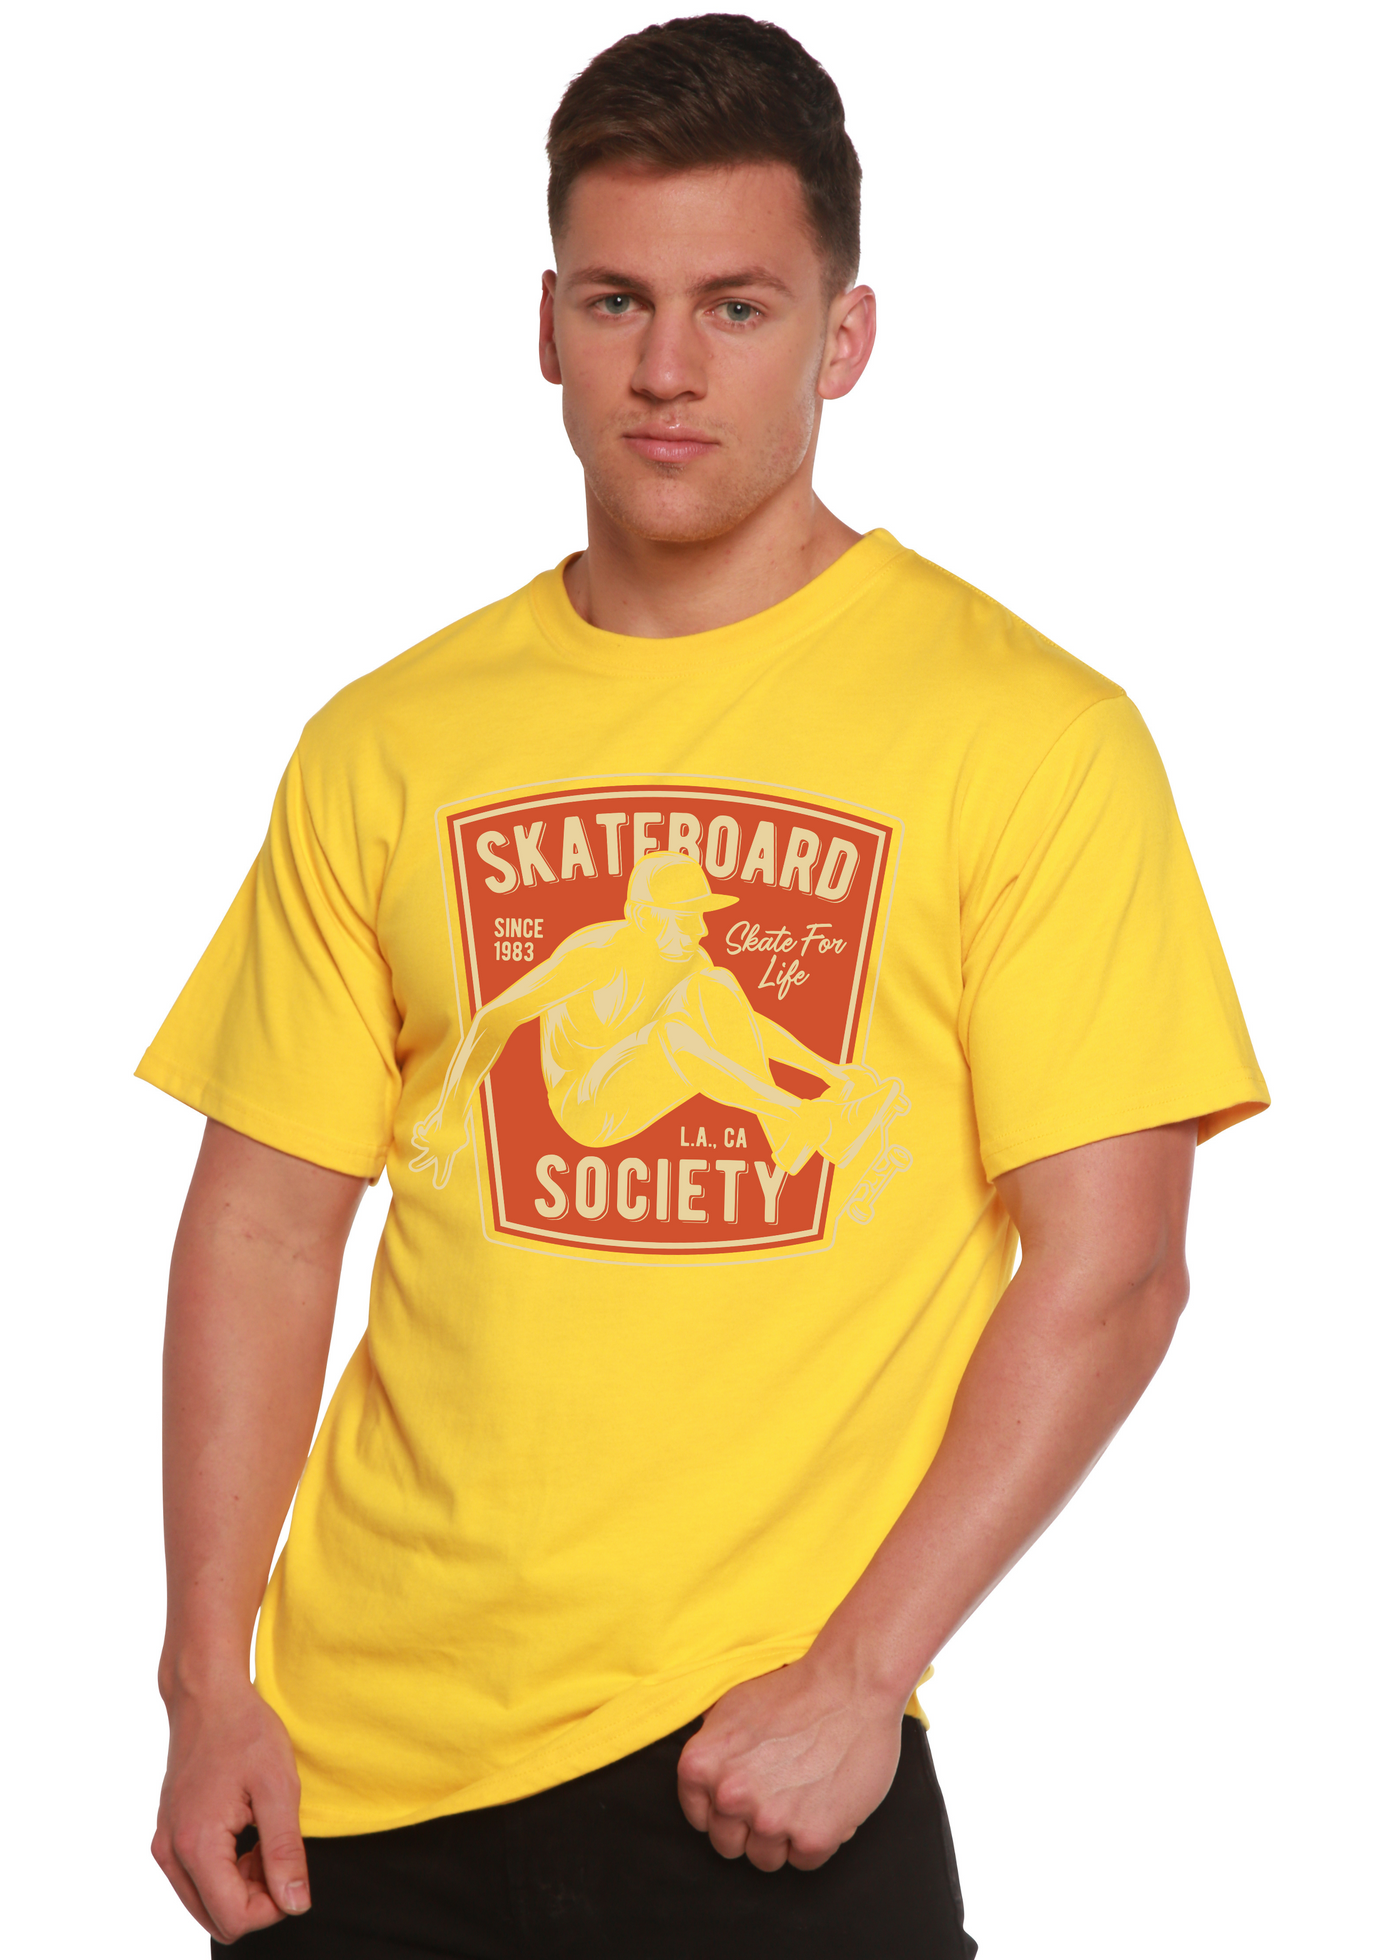 Skateboard Society men's bamboo tshirt lemon chrome